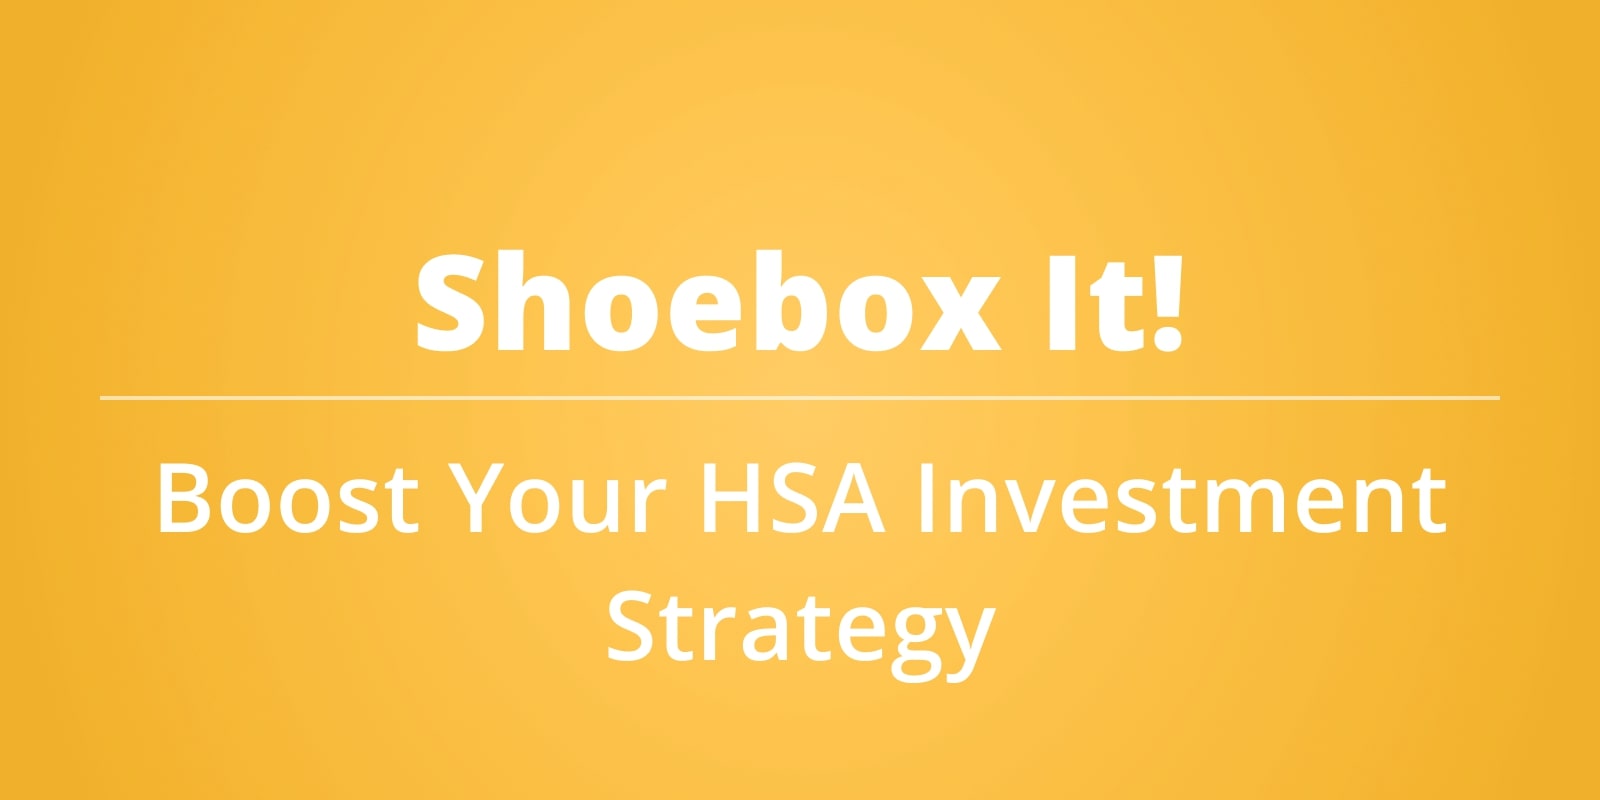 HSA shoebox